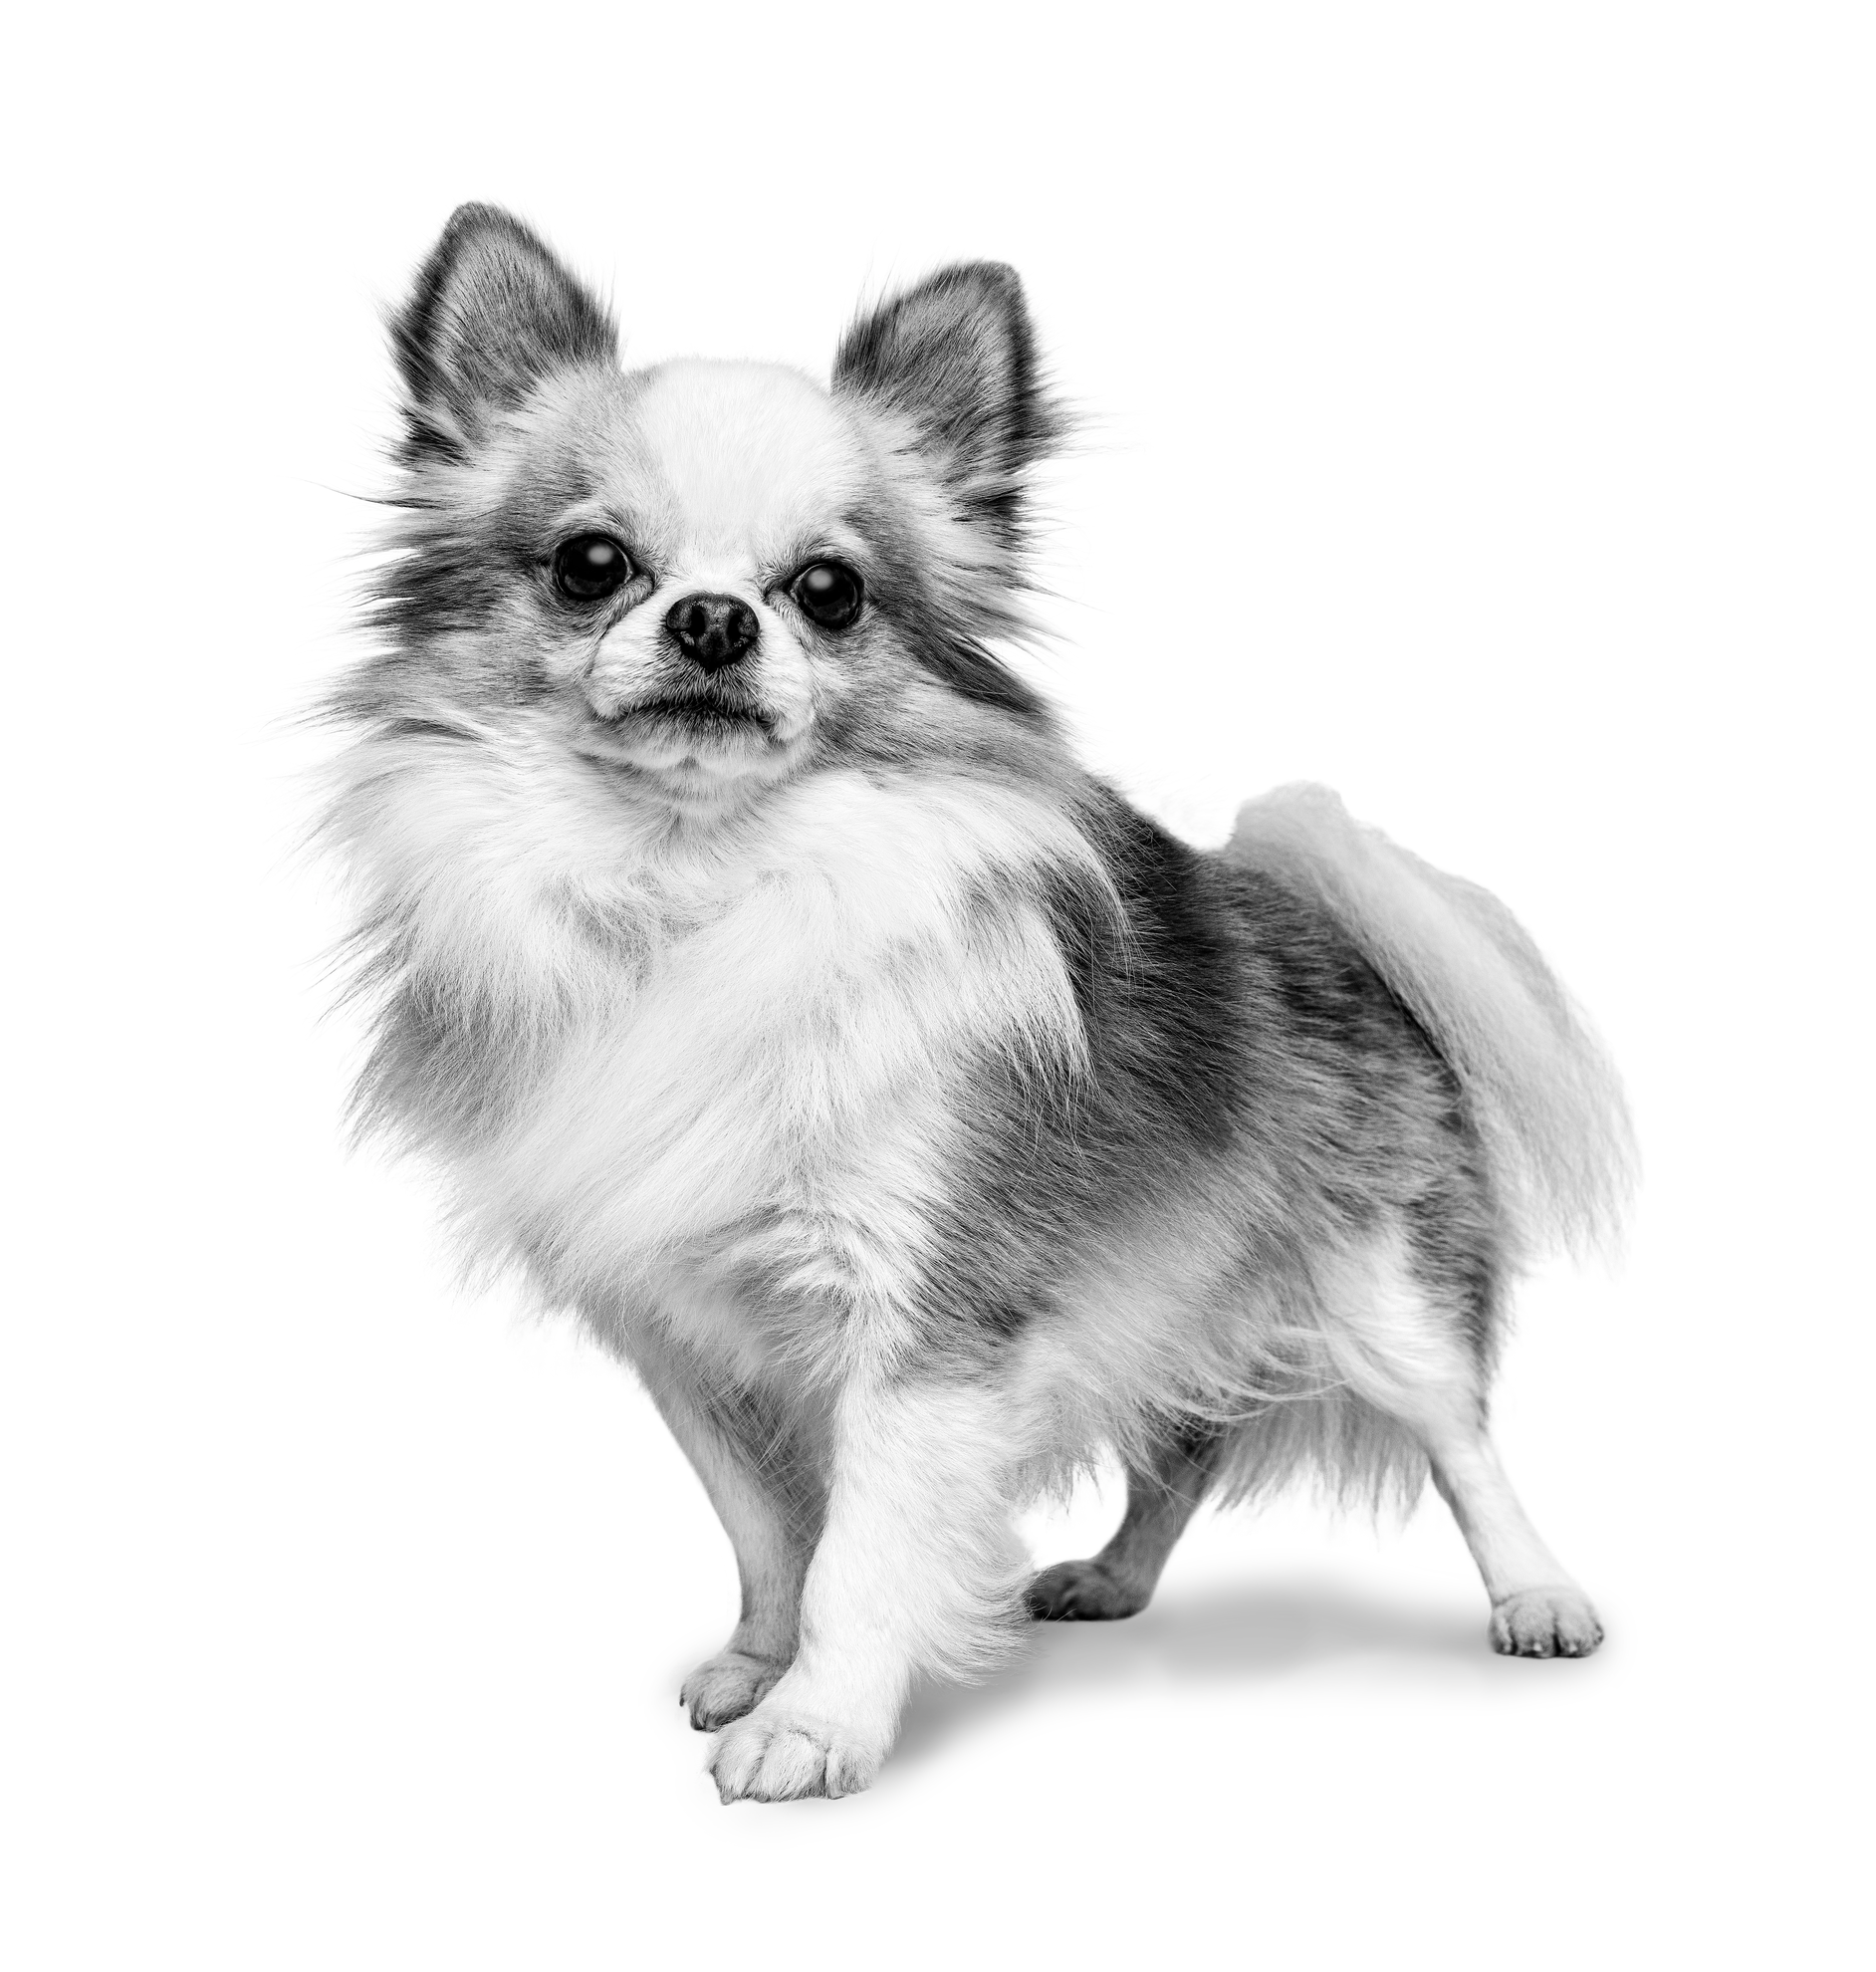 Chihuahua adulto de pé, a preto e branco sobre um fundo branco